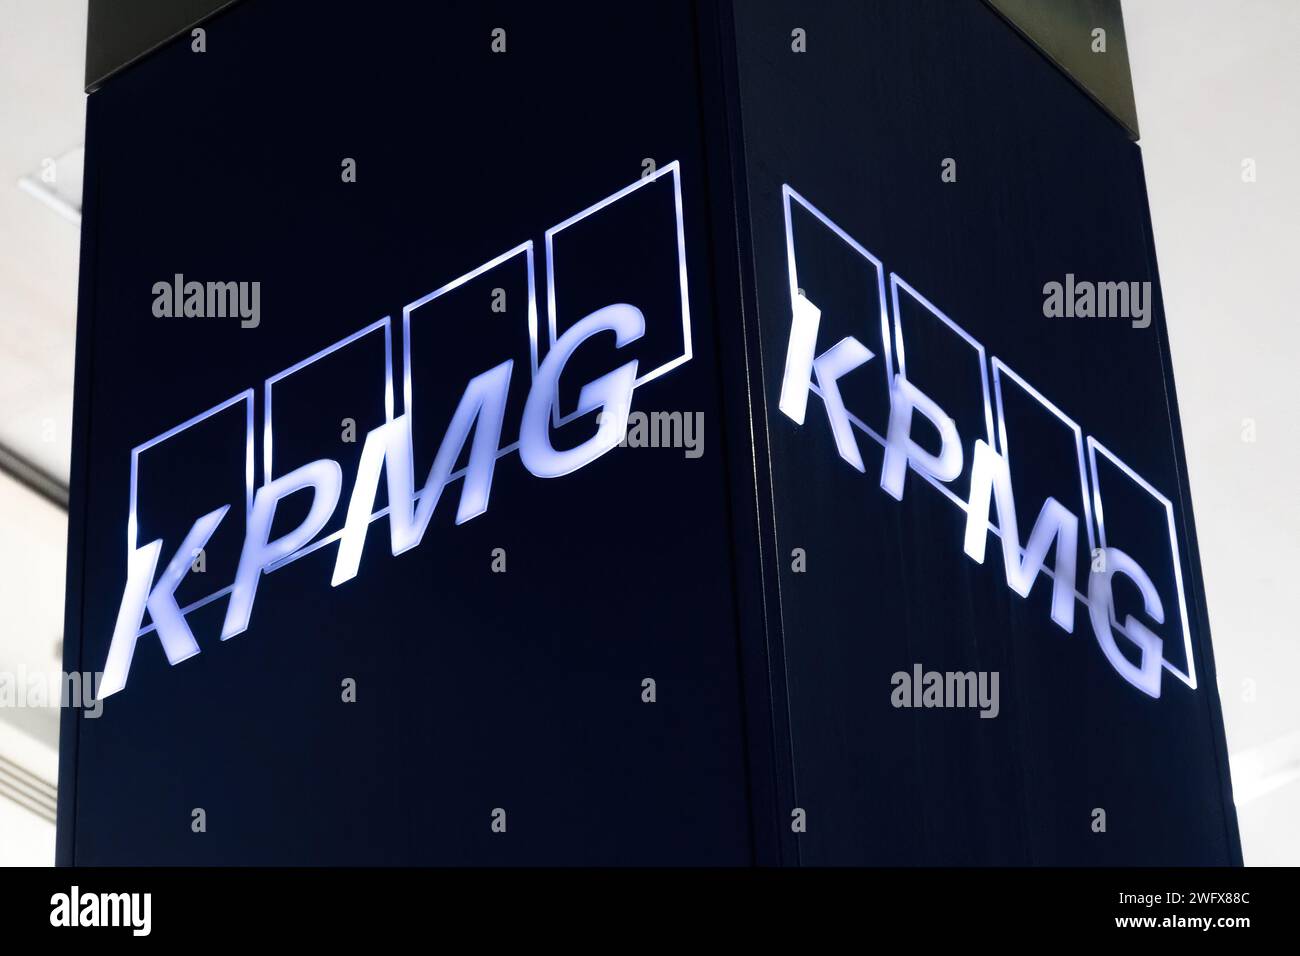 KPMG signe le logo de signalisation sur l'immeuble de bureaux à Canary Wharf, Londres, Angleterre, Royaume-Uni. Société multinationale, services financiers Banque D'Images